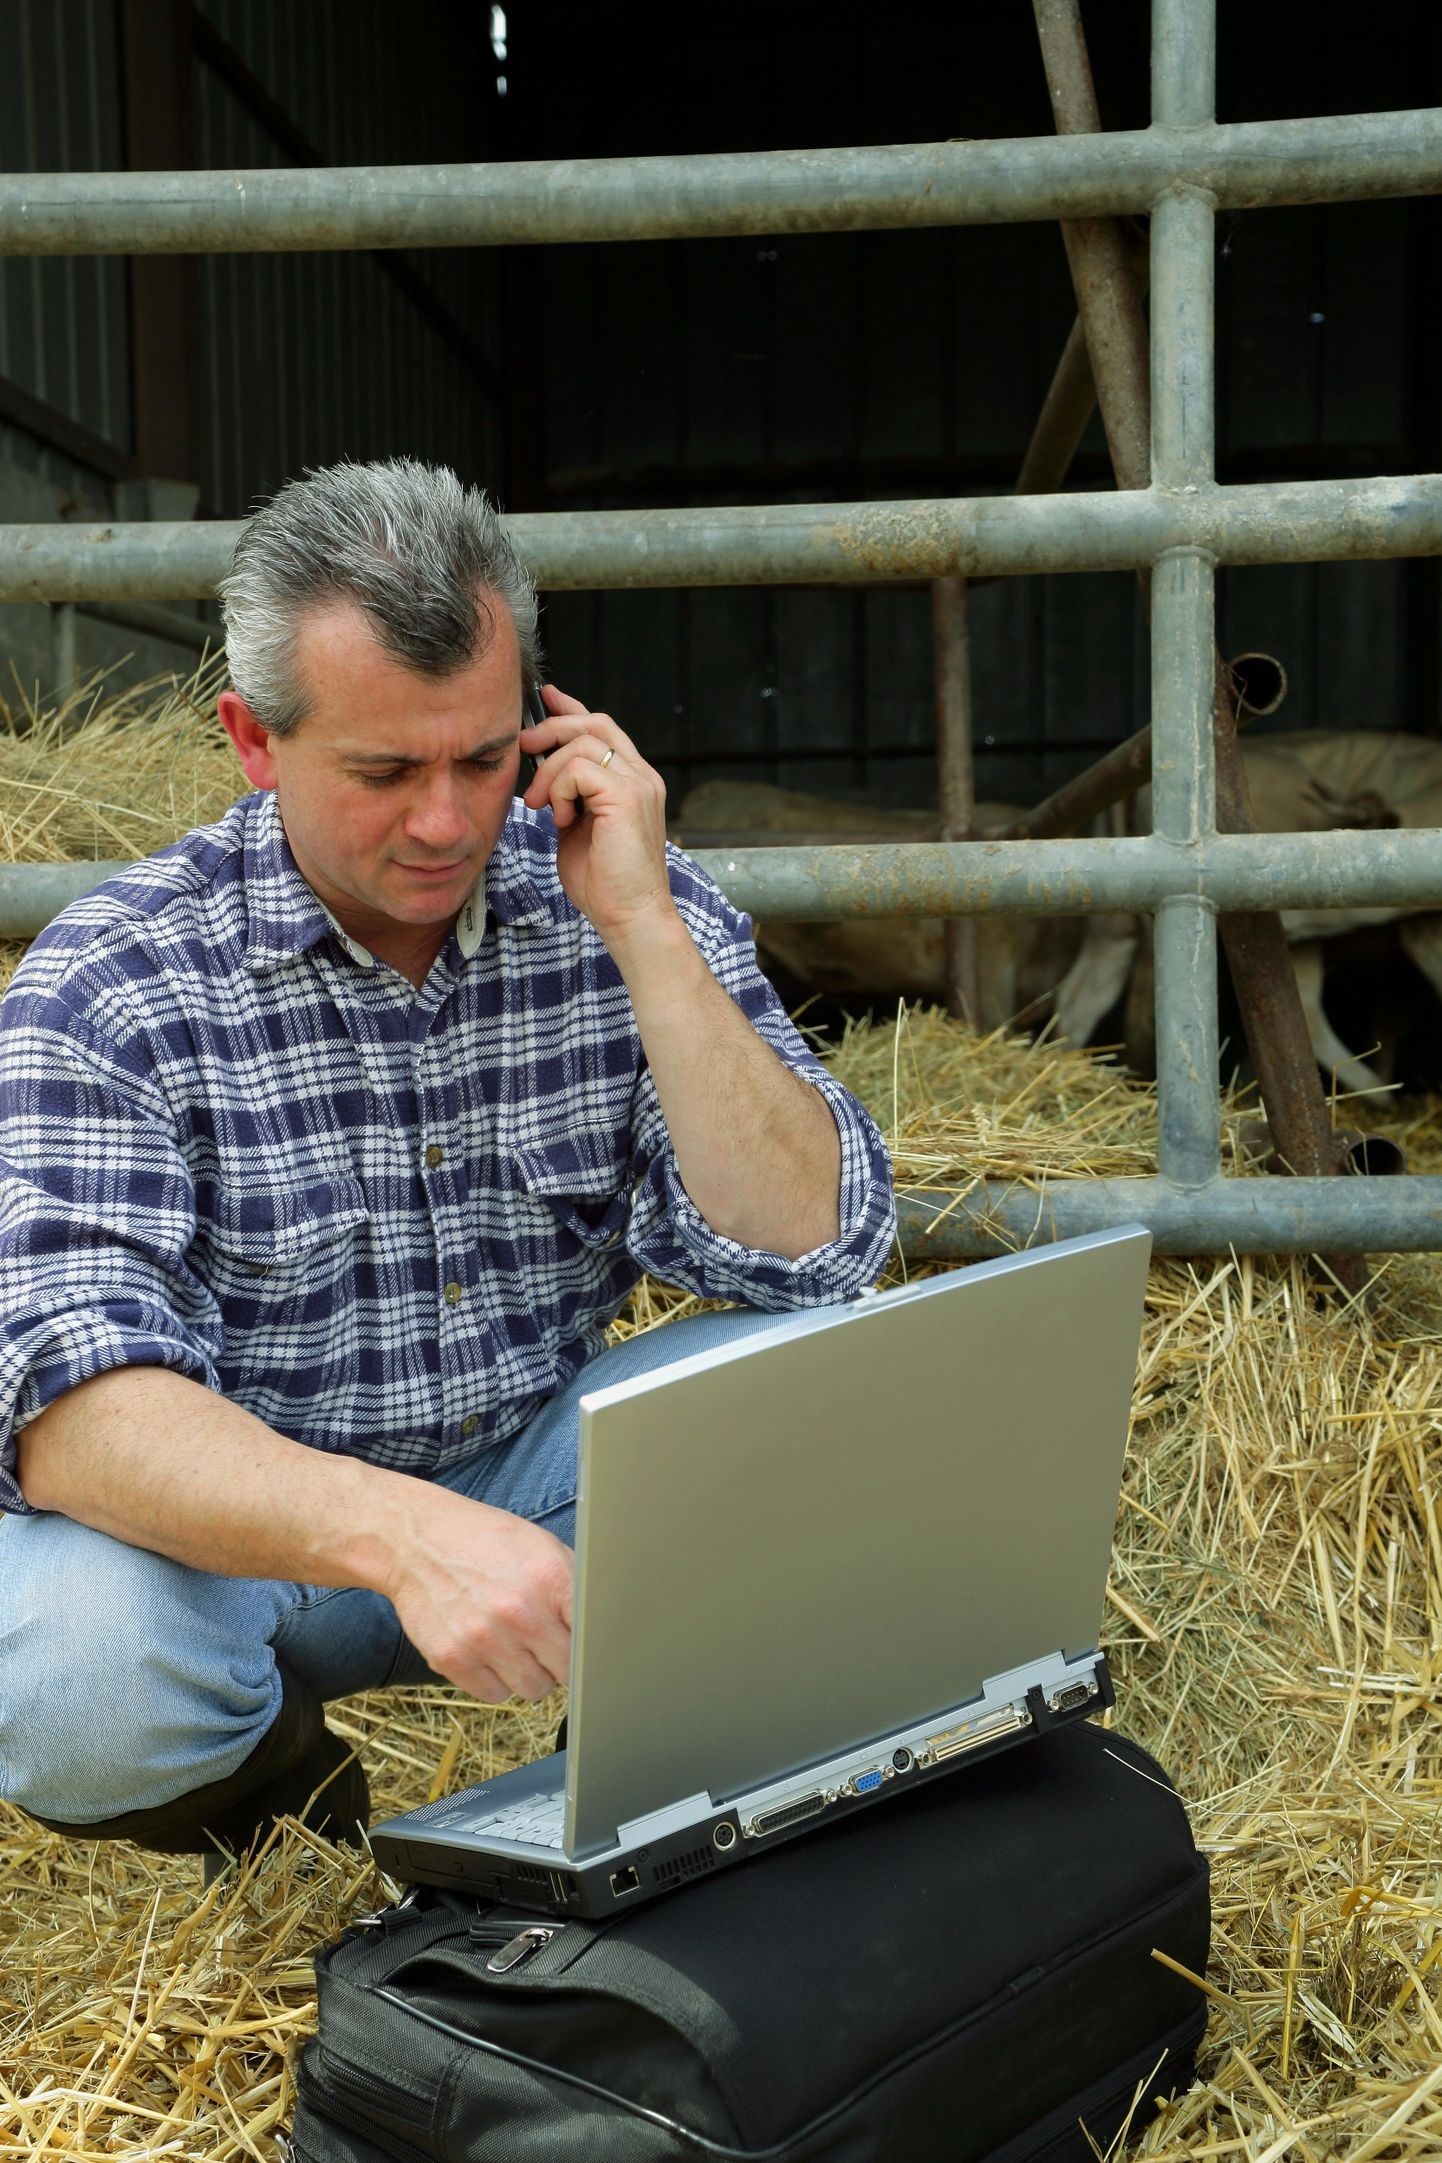 Põllumajandusloendusel saab veel kuni 20. septembrini osaleda veebi kaudu, seejärel algab 15. novembrini kestev telefoniküsitlus.